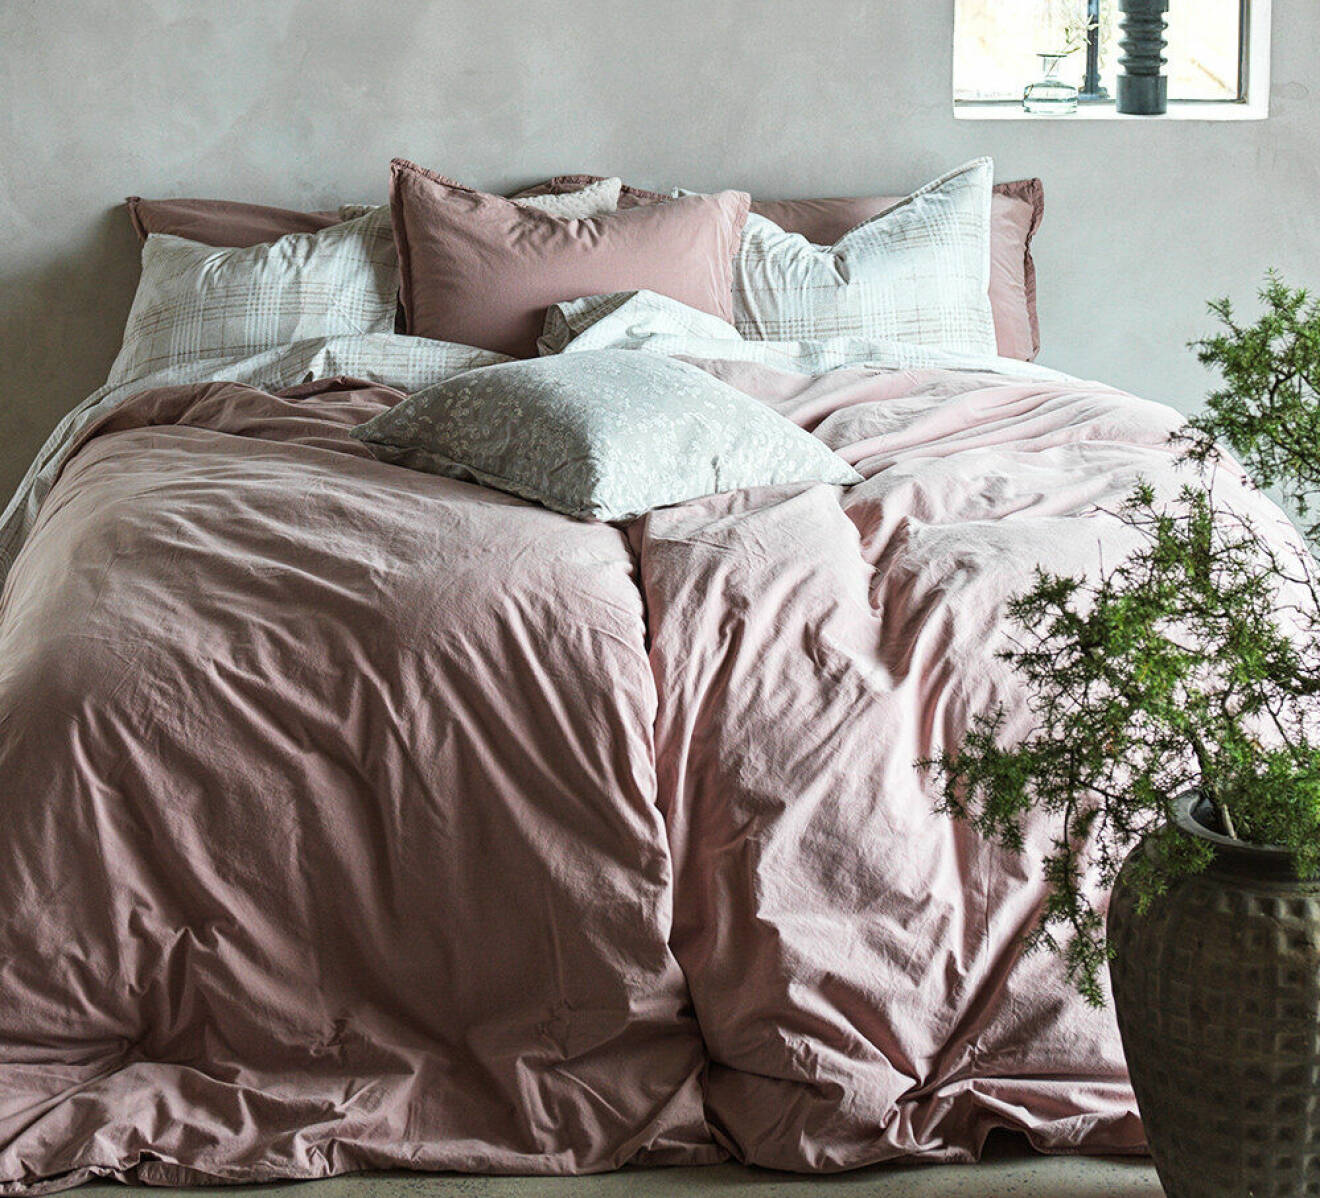 Säng med rosa sängkläder.